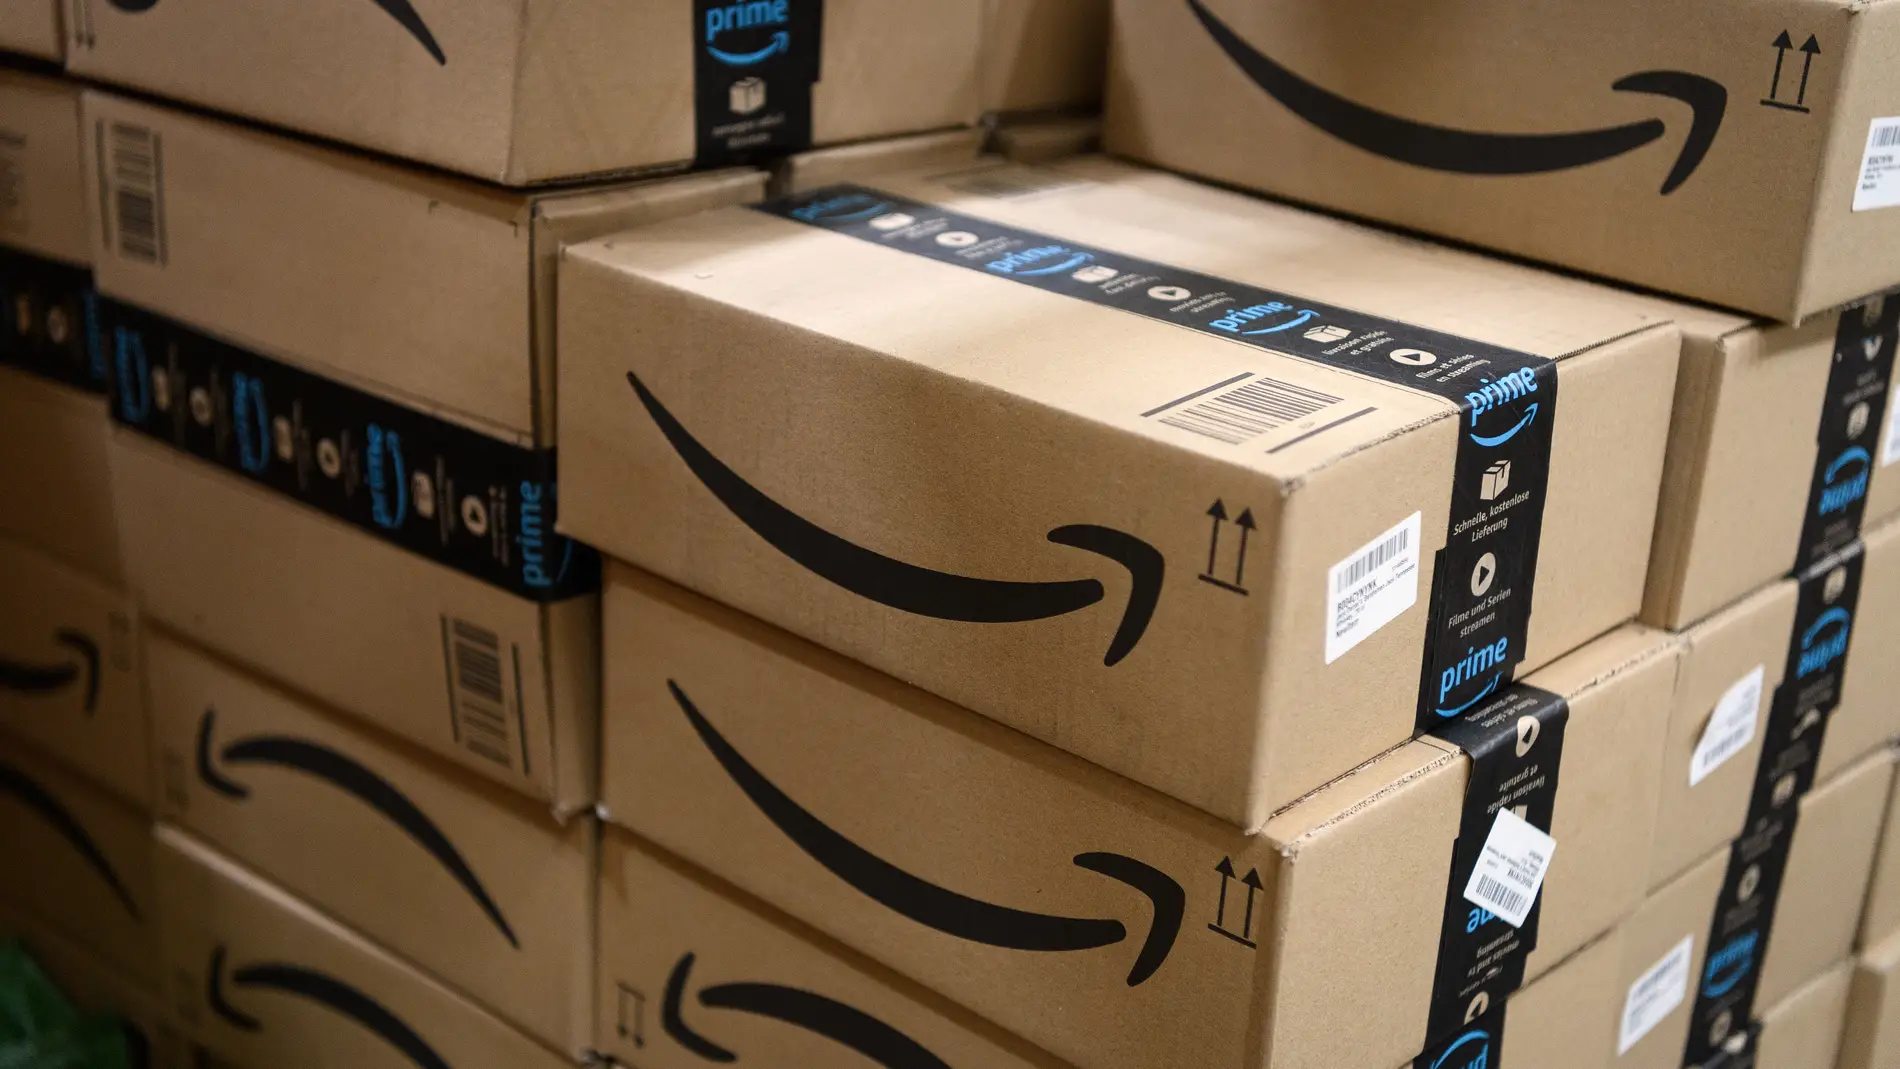 Cuándo es el Prime Day: Amazon pone fecha a sus días de ofertas y descuentos